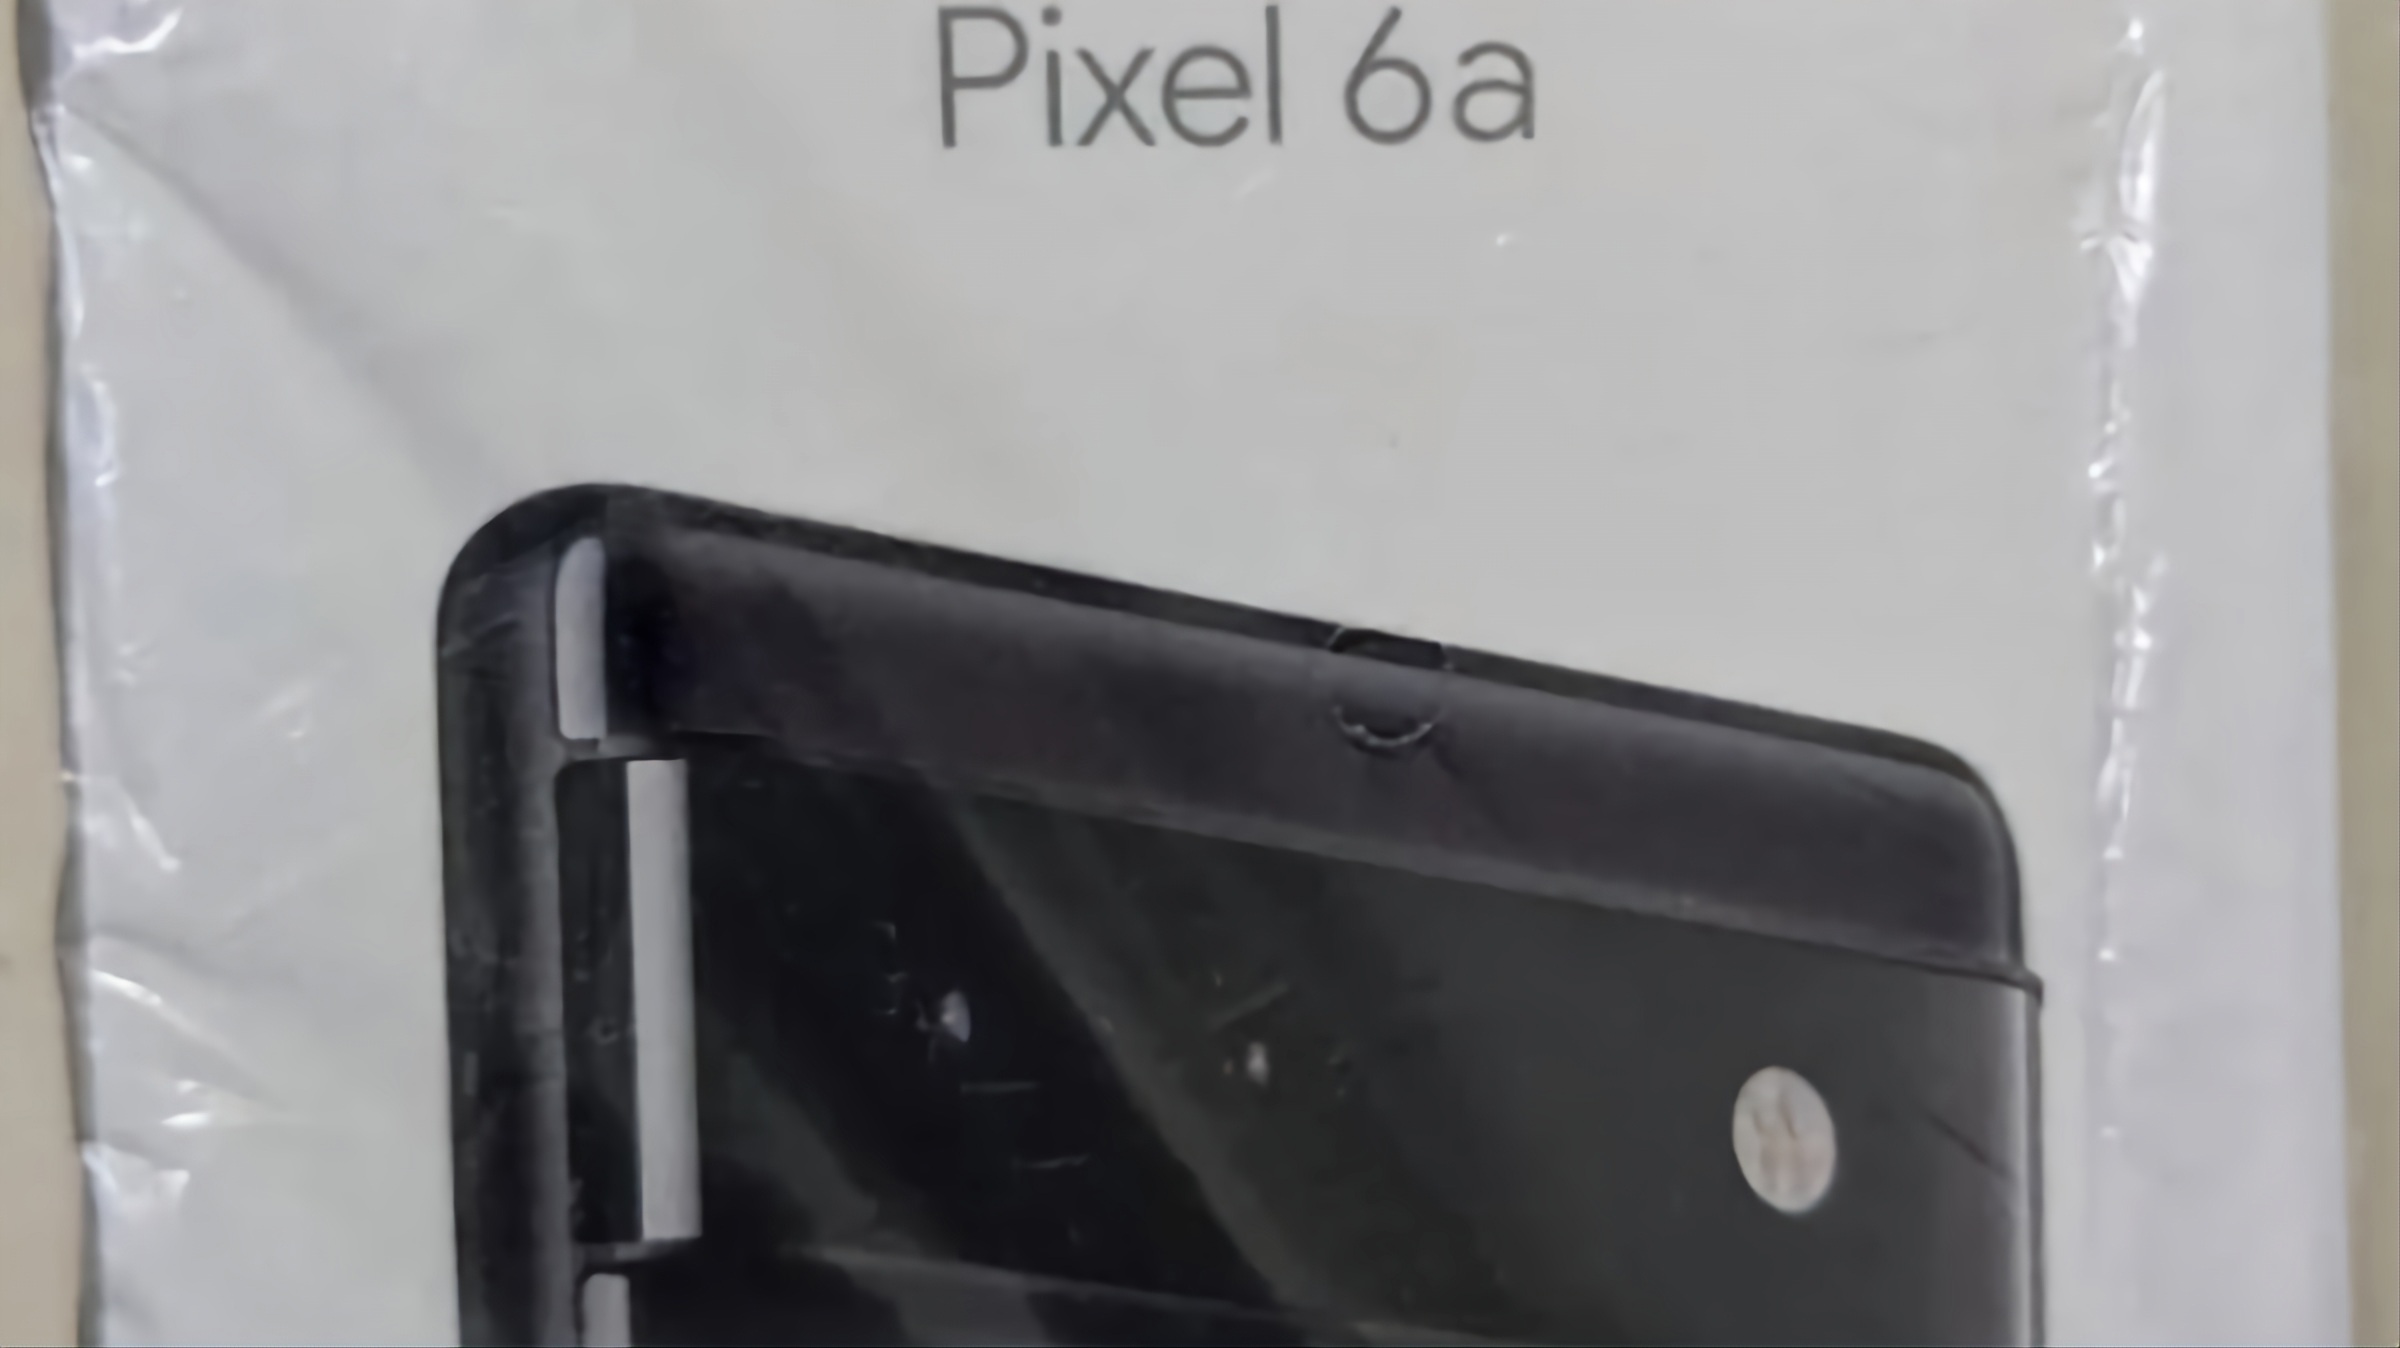 جعبه Pixel 6a گوگل لو رفت: تایید طراحی مشابه Pixel 6